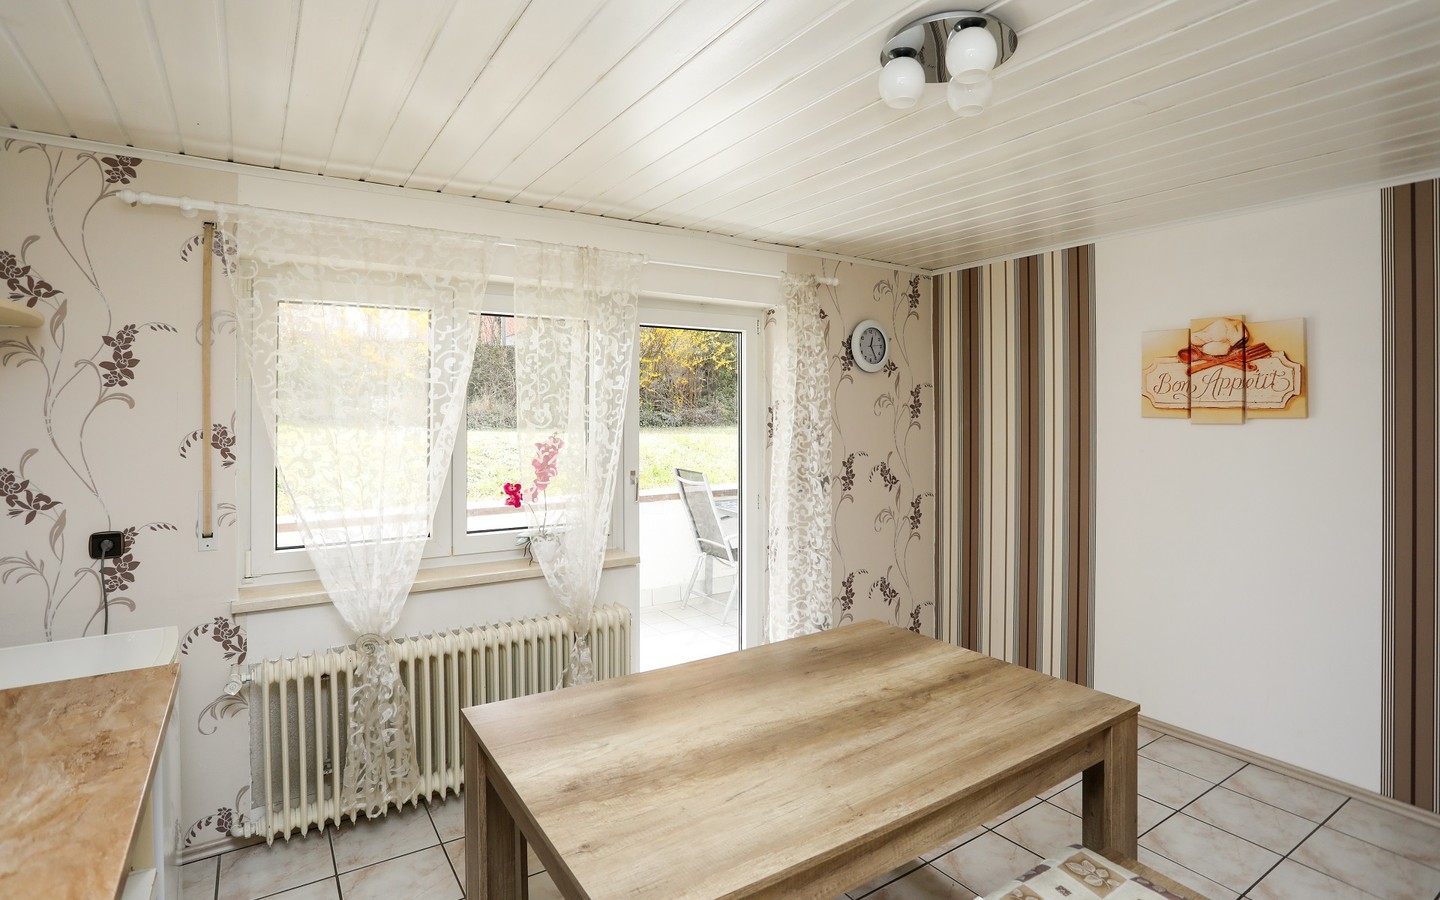 Küche - Raum für individuelle Wohn(t)räume: Attraktives und ausbaufähiges Zweifamilienhaus in Dielheim